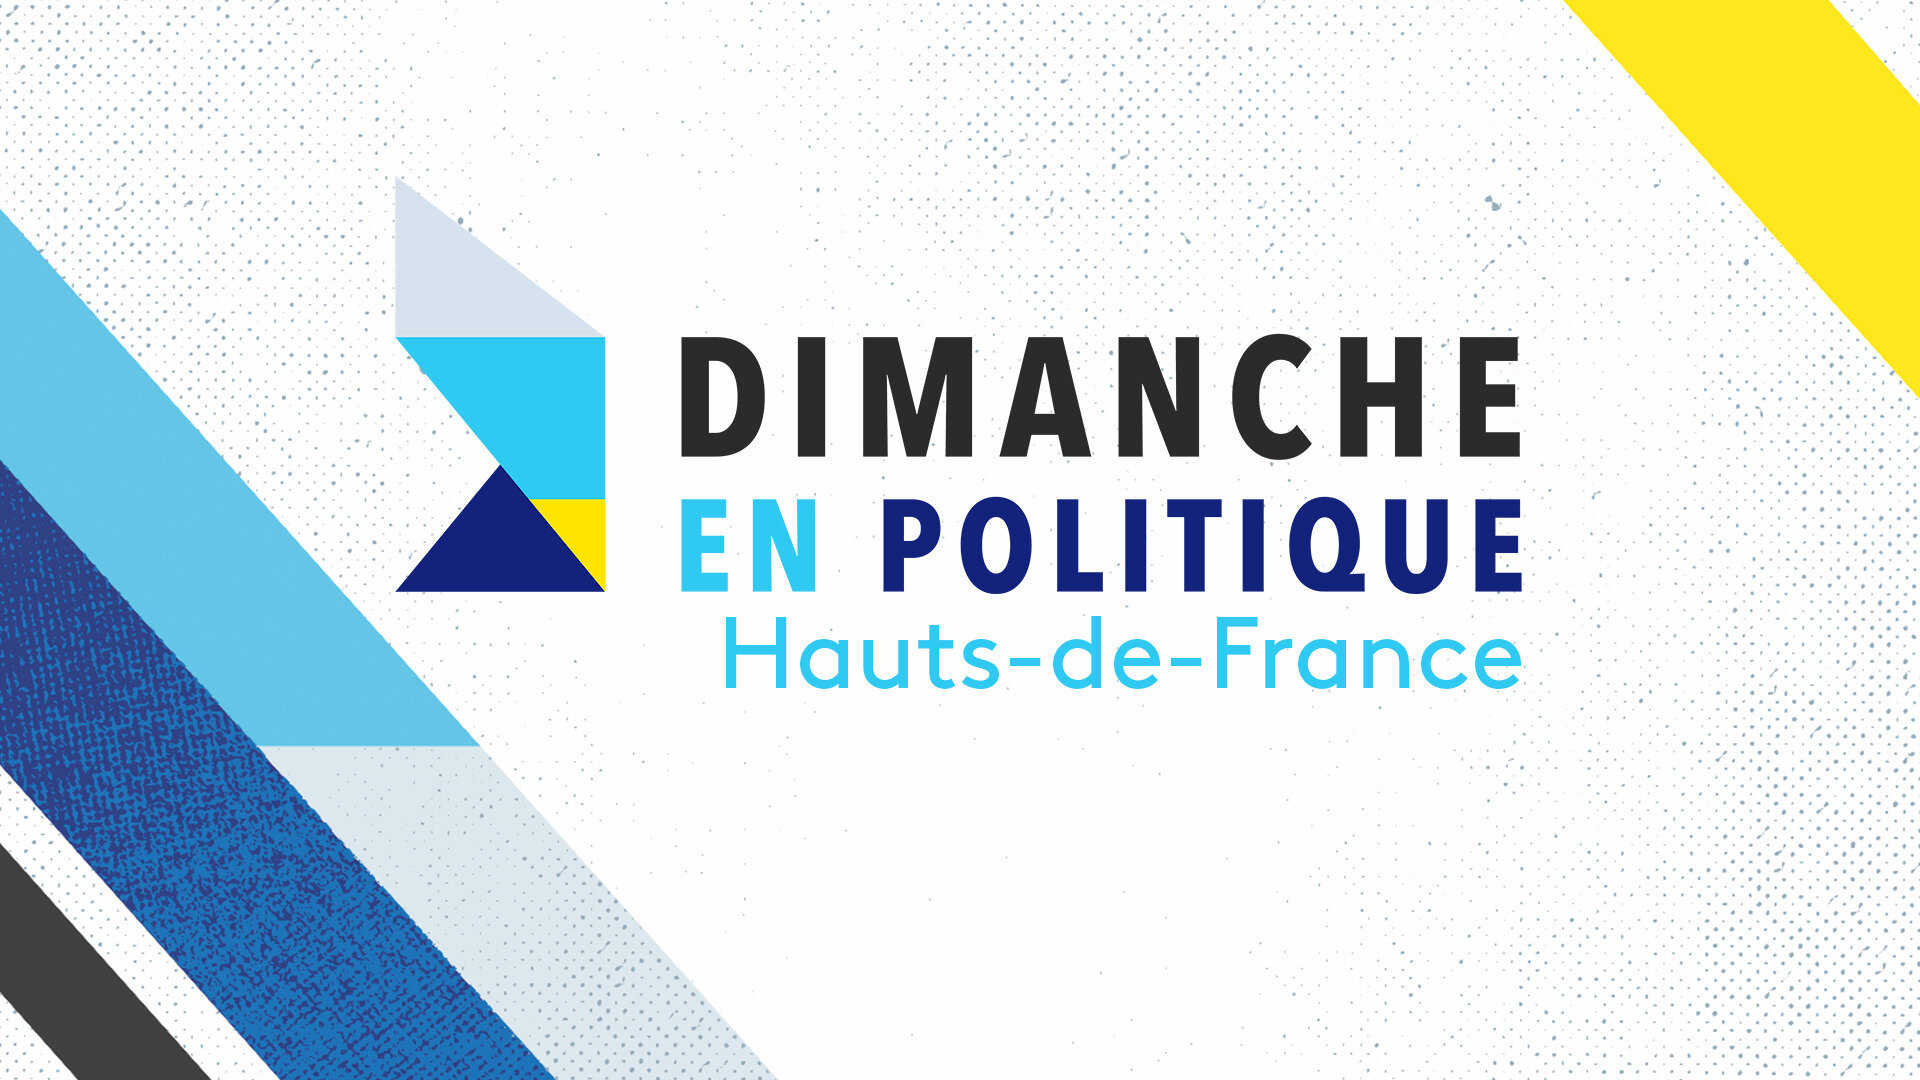 Dimanche en politique - Hauts-de-France